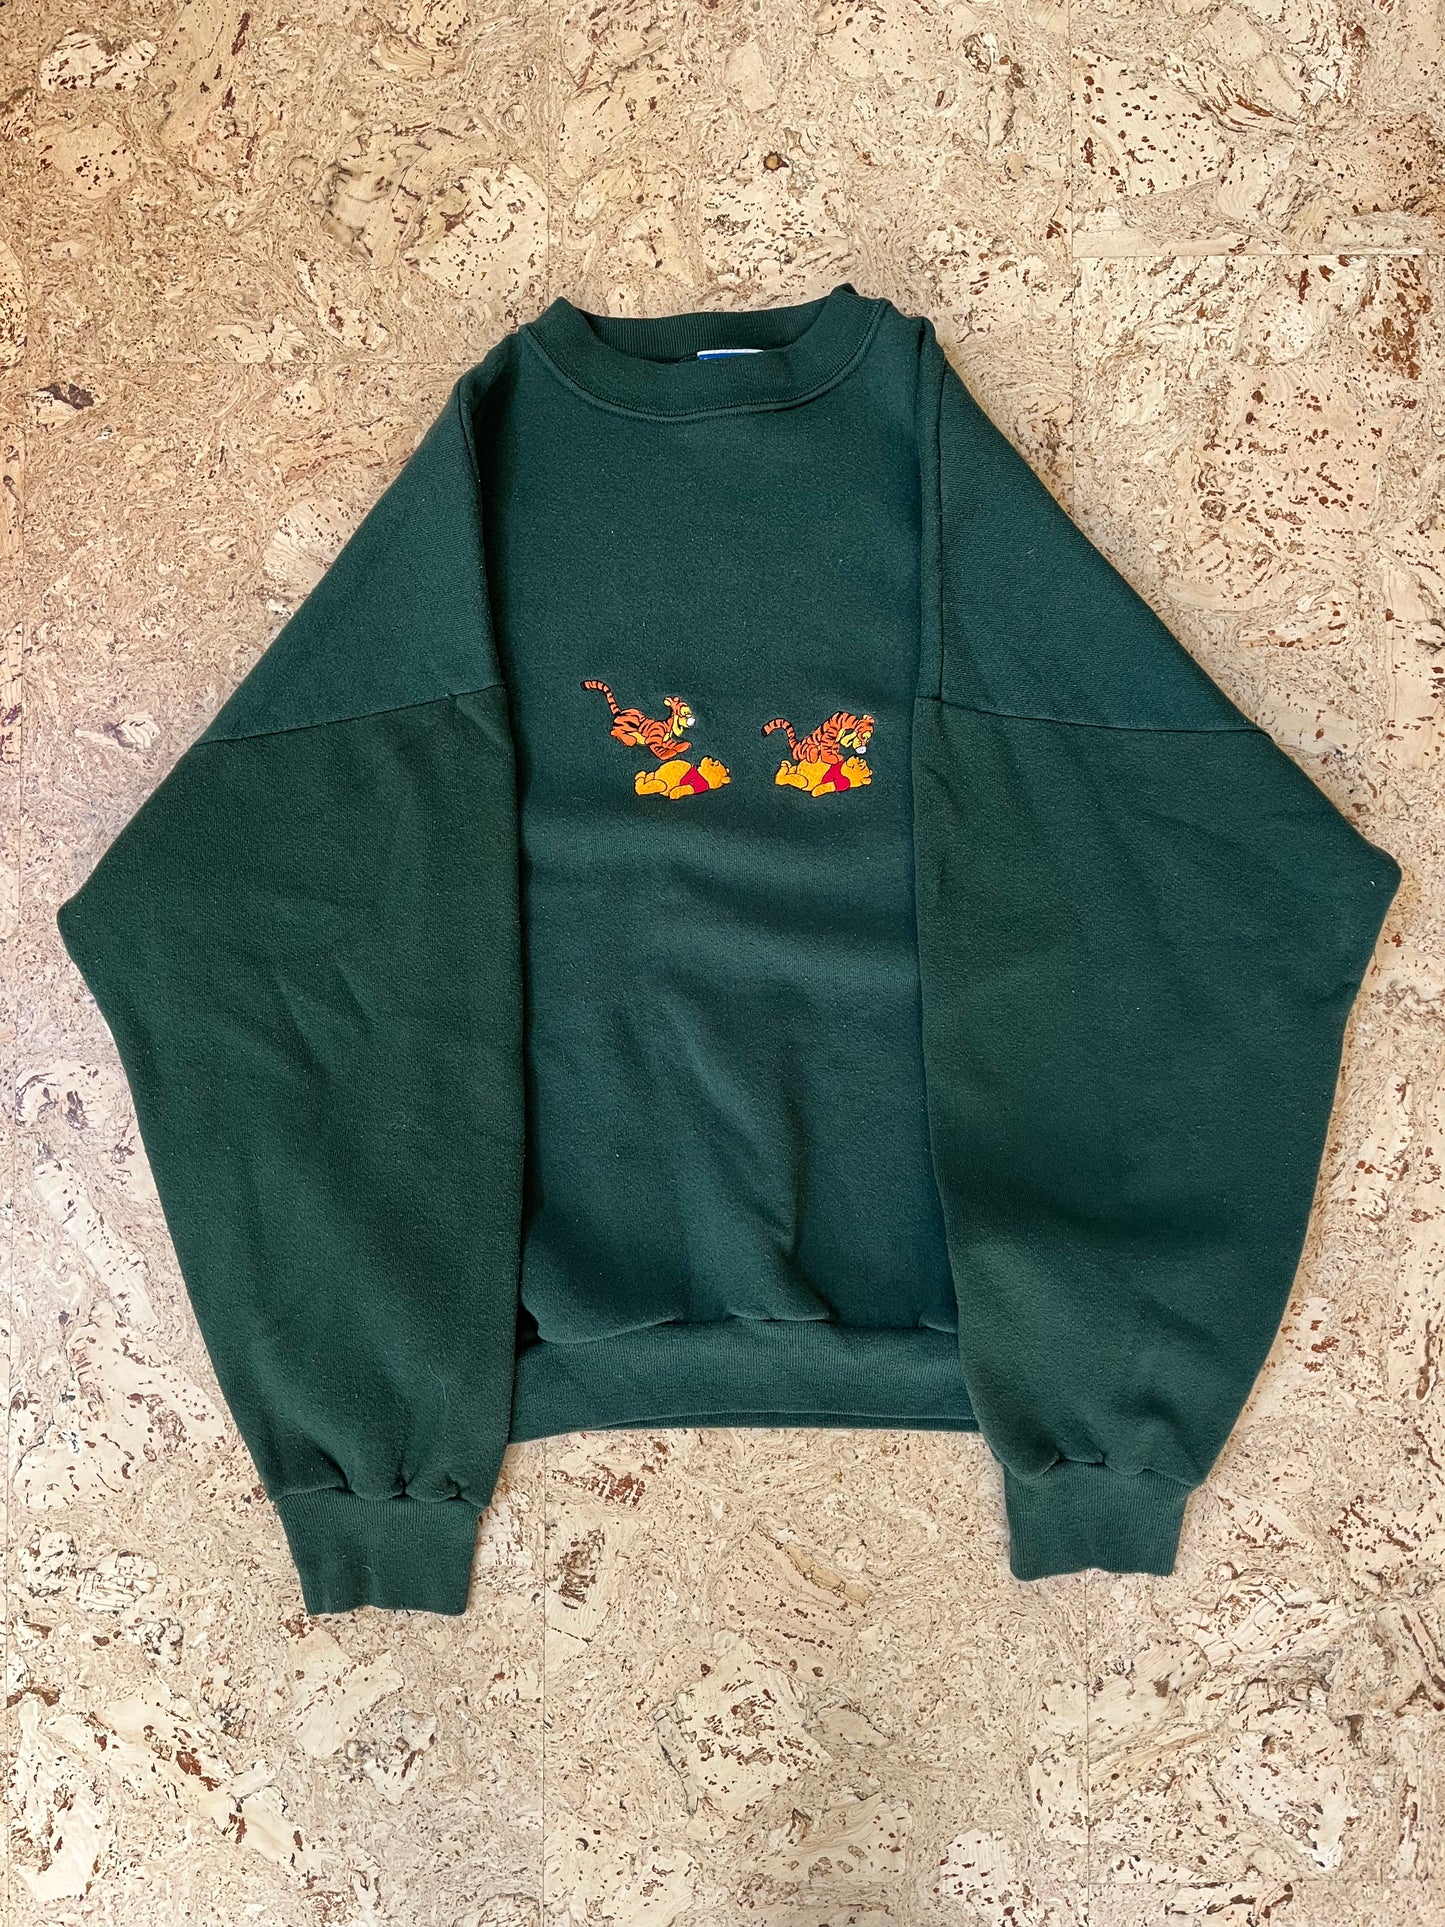 Vintage 90s Pooh Sweatshirt Embroidered